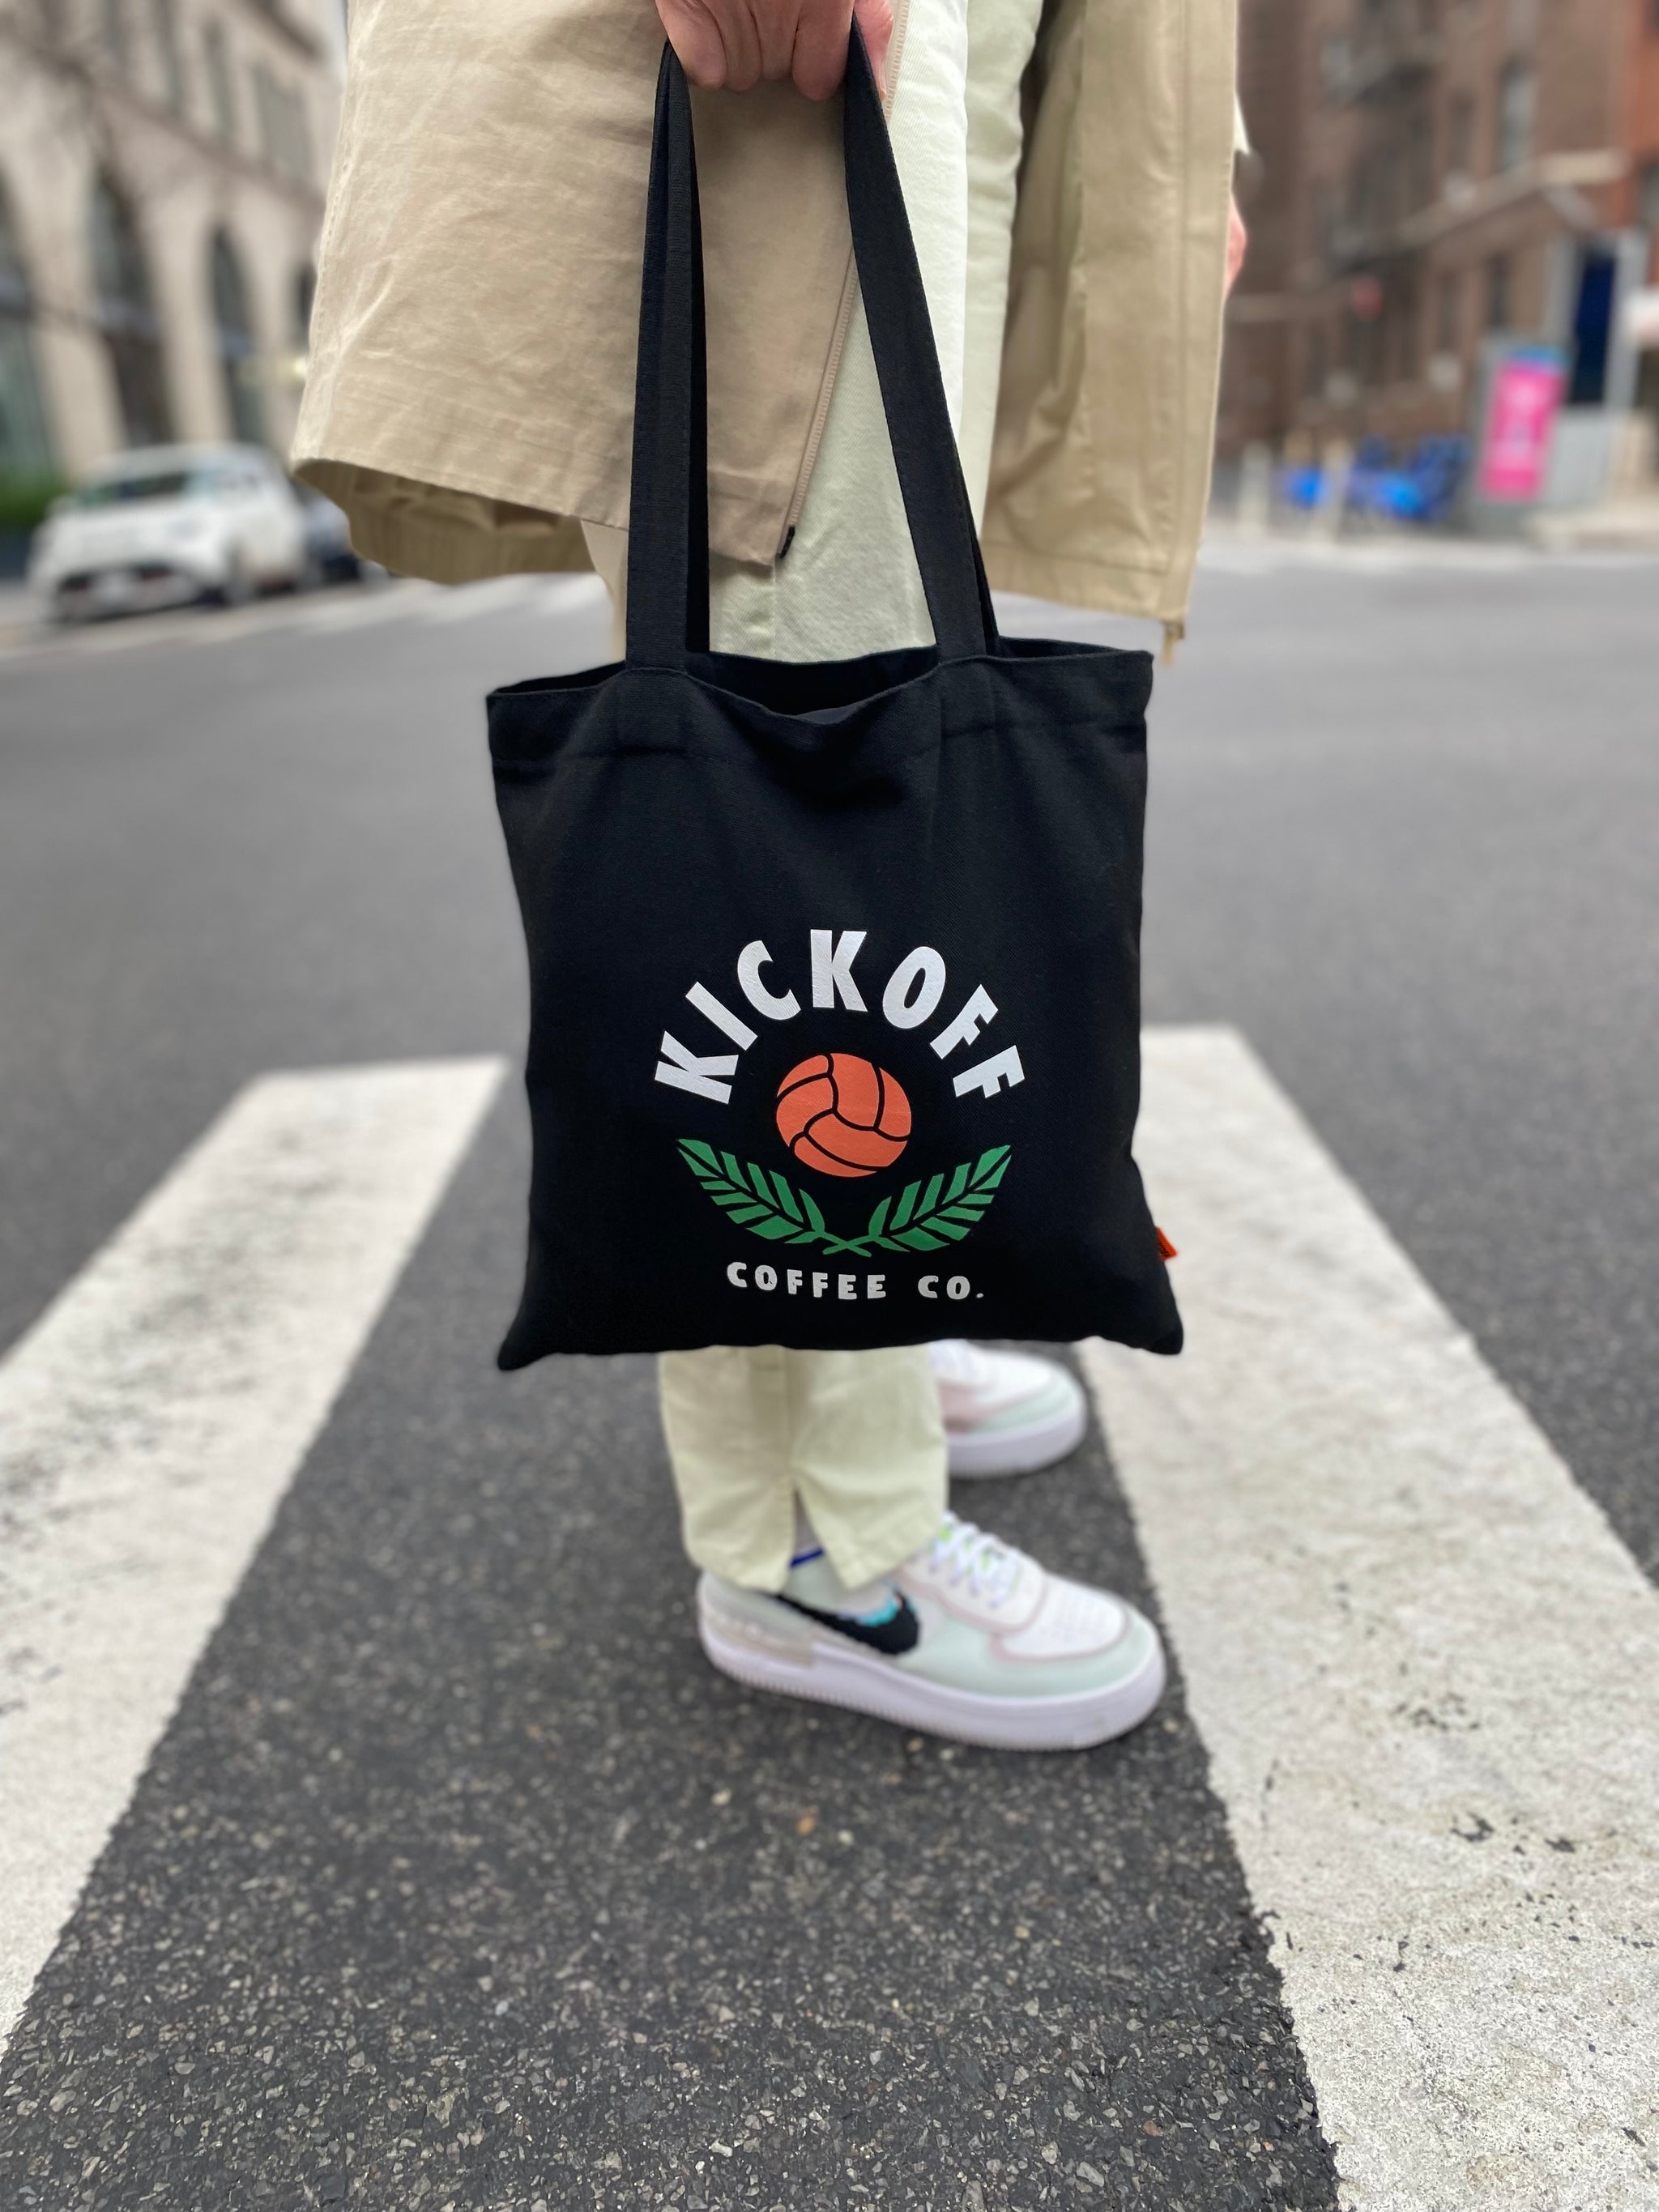 Kickoff Coffee Tote Bag (Medium Size) - KickoffCoffeeCo